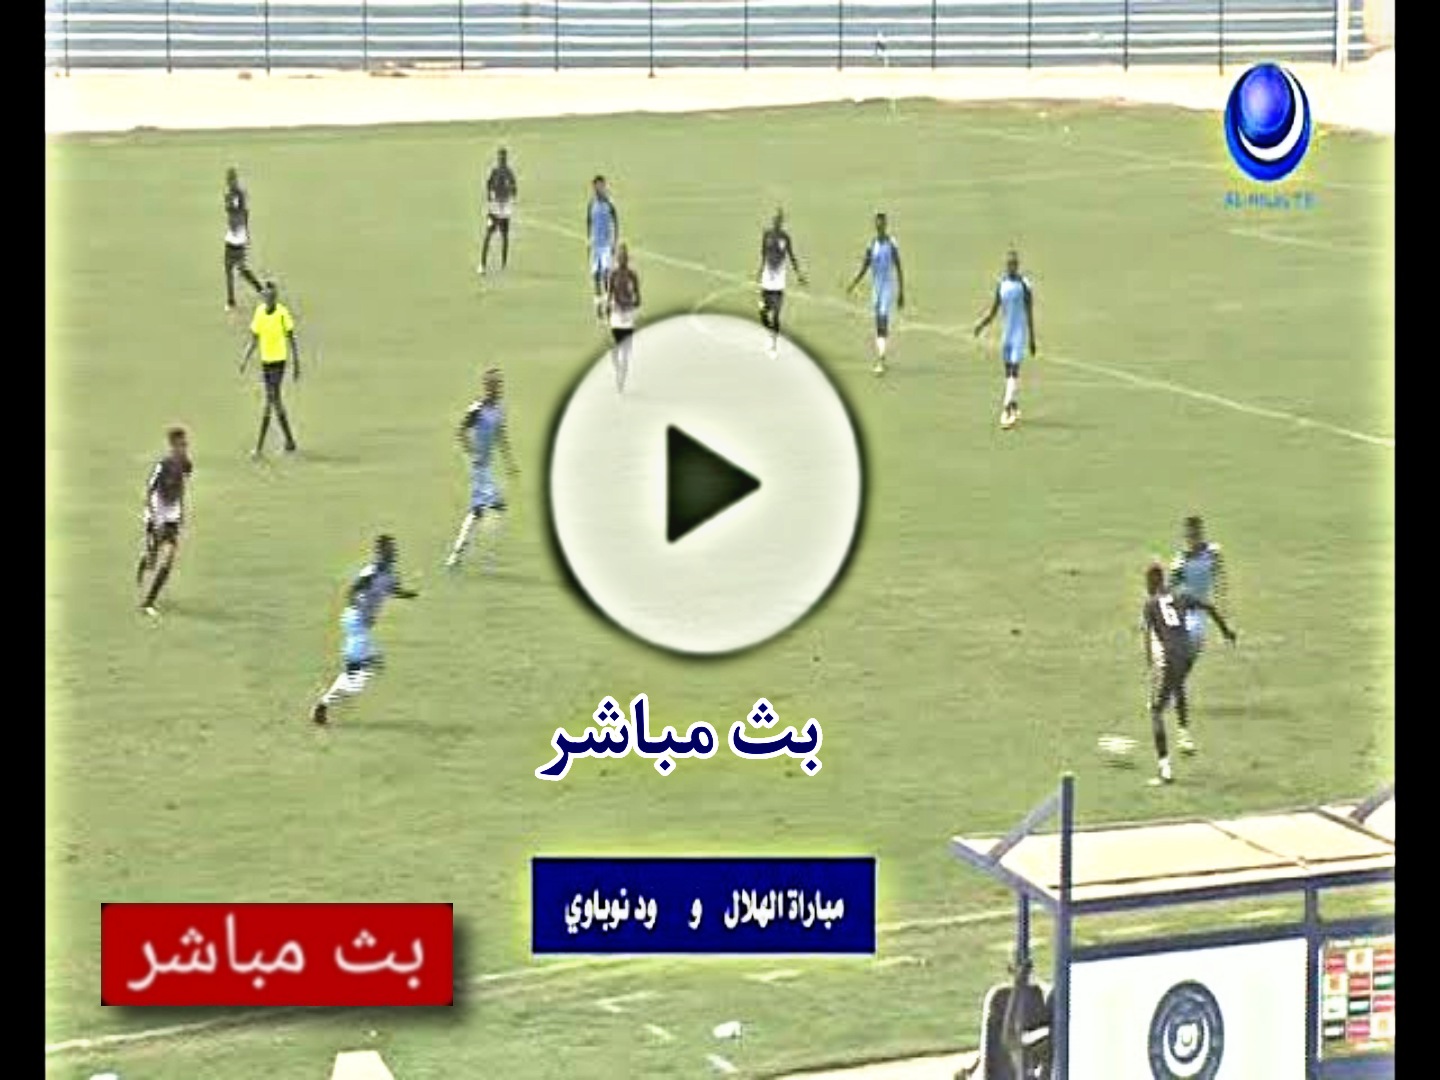 مشاهدة مباراة الهلال وود نوباوي اليوم بث مباشر في الدوري السوداني الممتاز